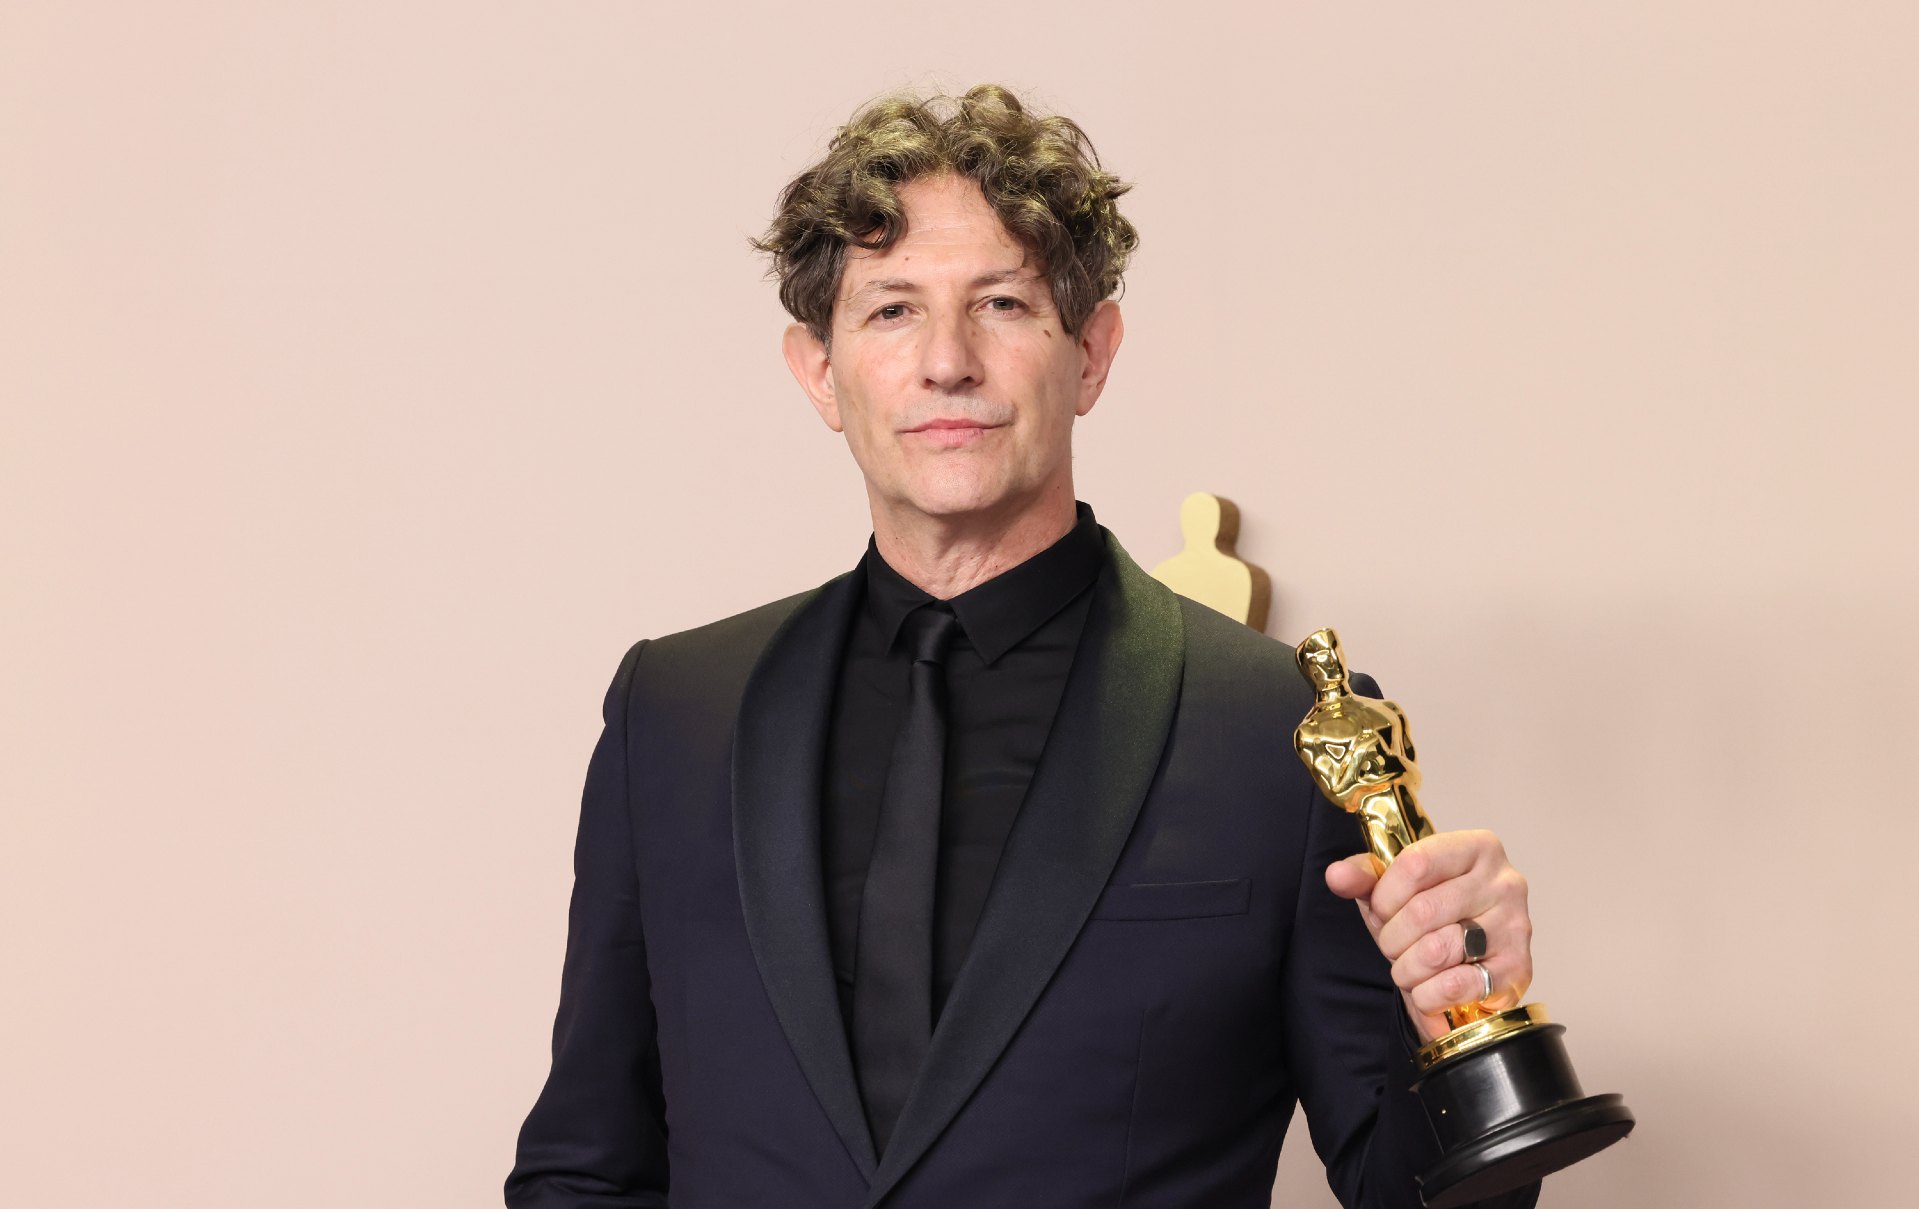 Jonathan Glazer holds an Oscars statuette